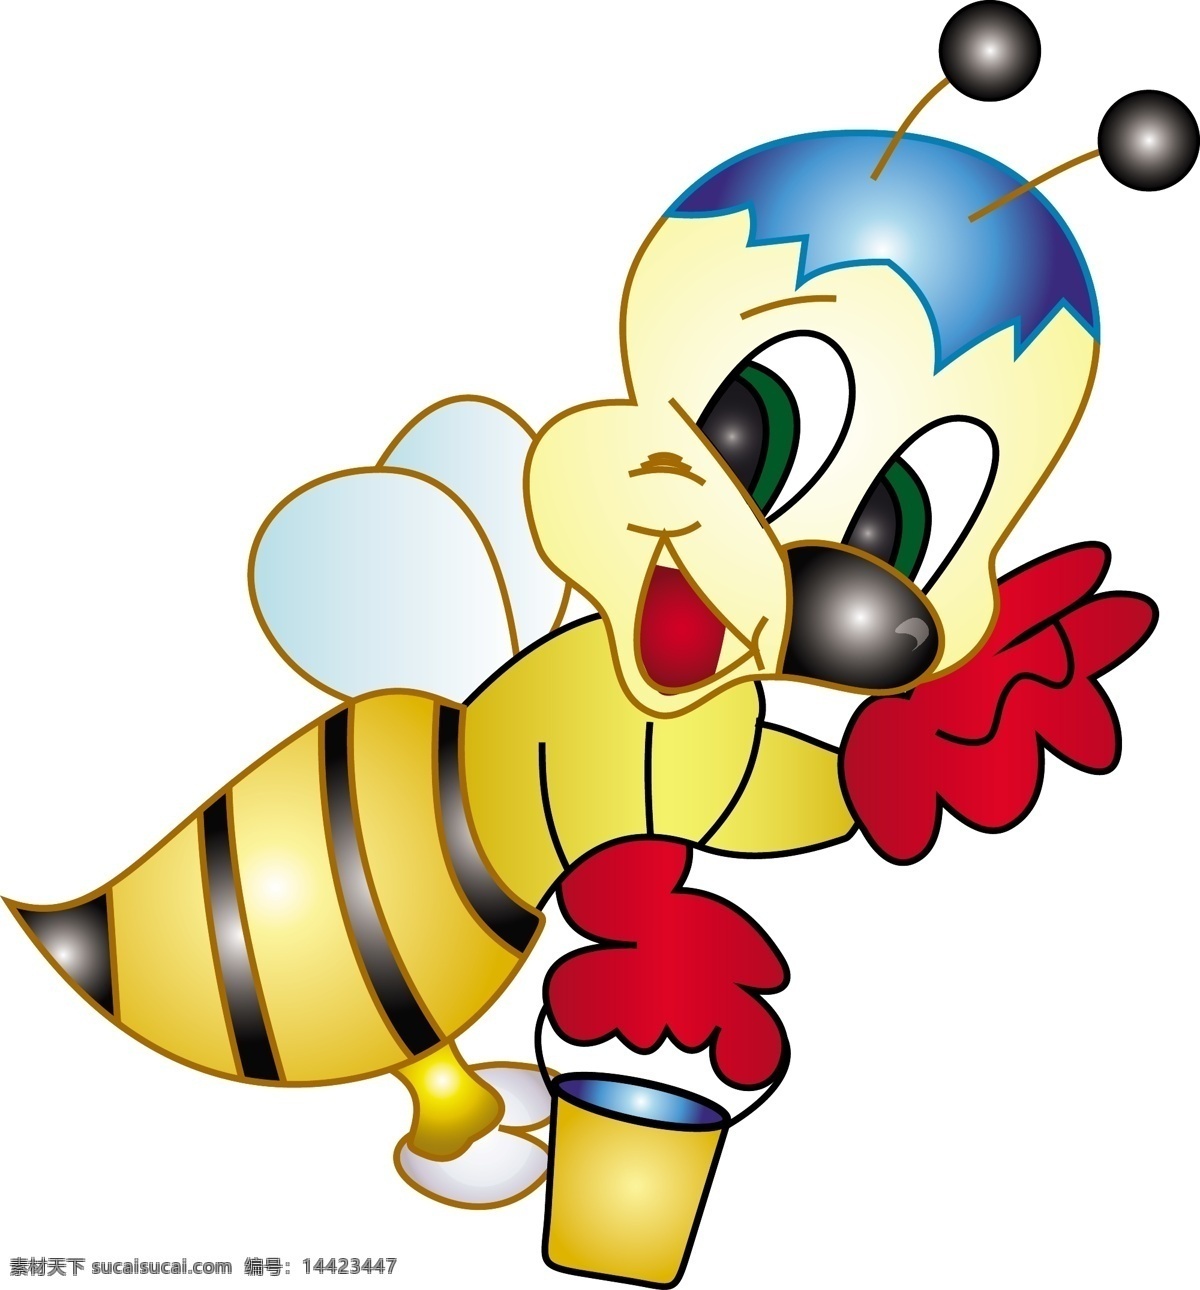 矢量 卡通 勤劳 蜜蜂 动物 儿童插画 可爱 快乐 矢量素材 形象 采蜜 蜂王 矢量图 其他矢量图